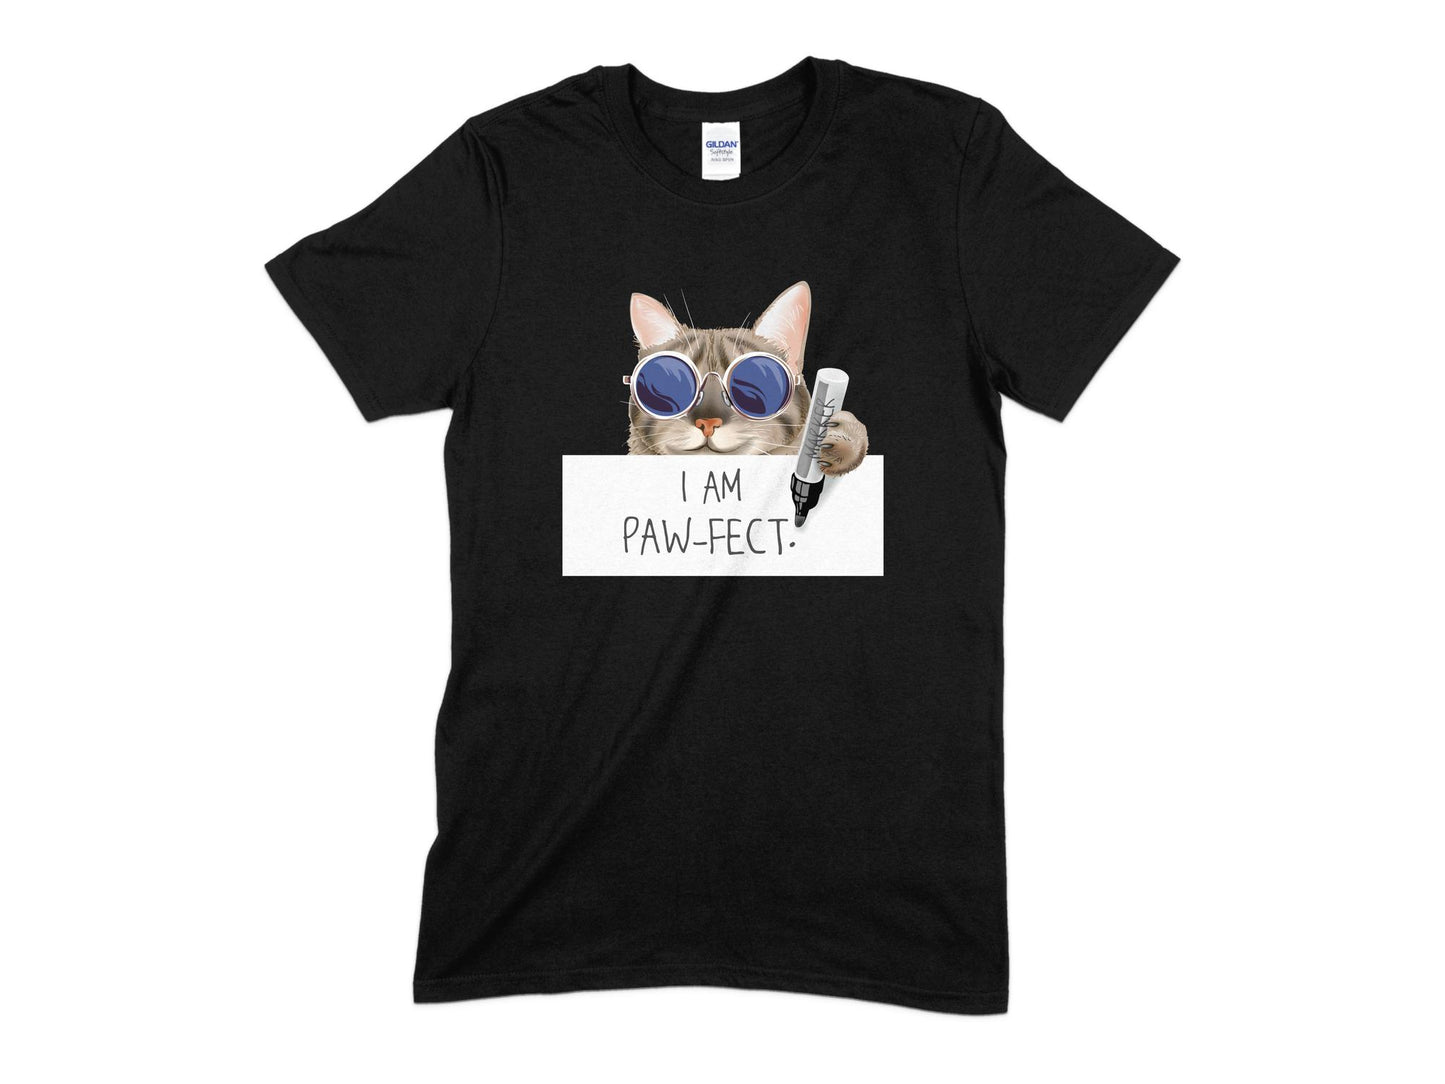 I Am A Paw-fect T-Shirt, Cute Cat Shirt